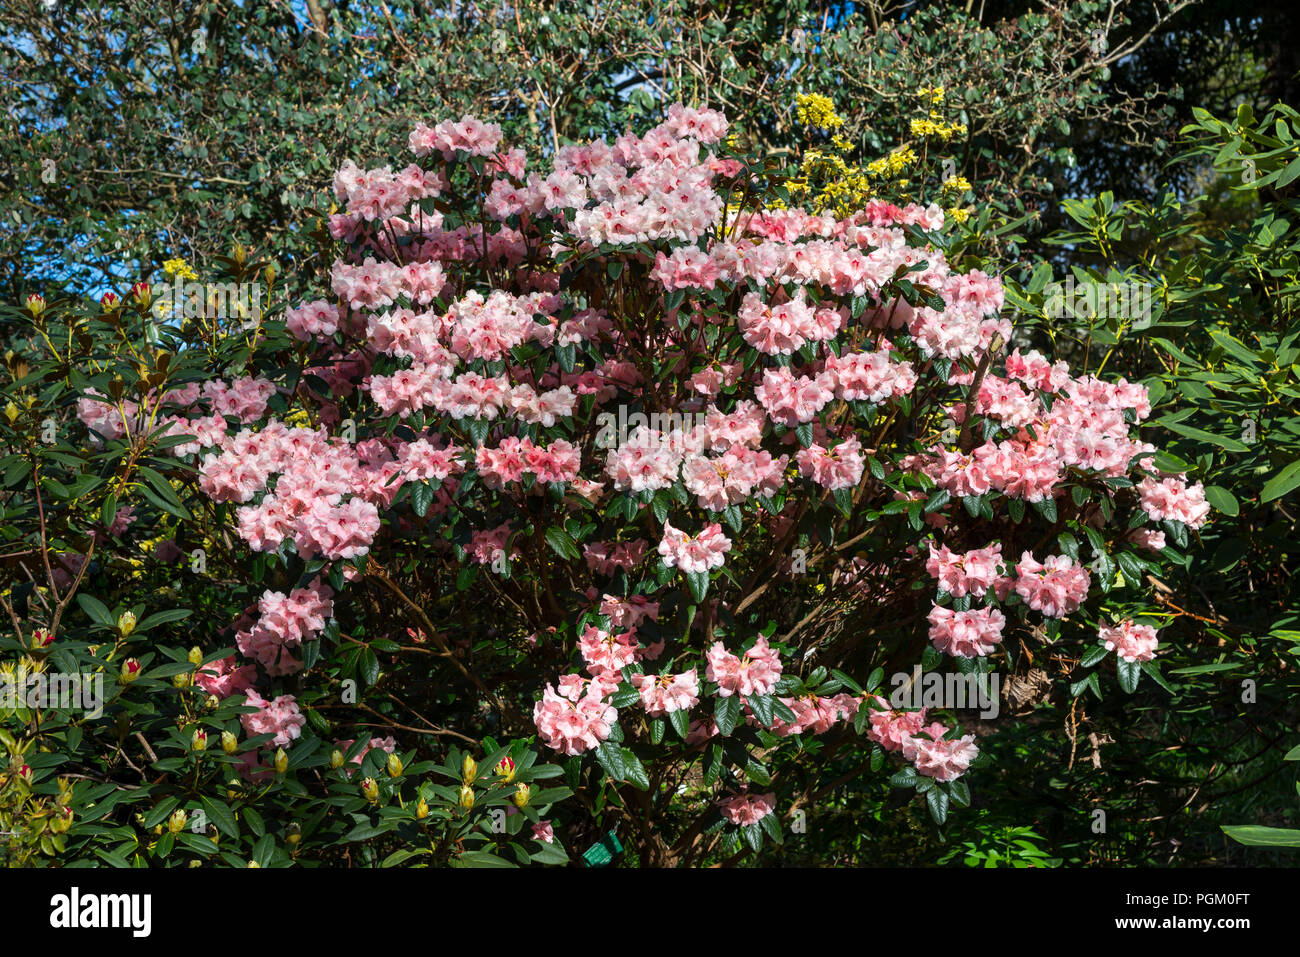 Rhododendron 'May Morn', une fleur rose Rhododendron floraison dans soleil du printemps. Banque D'Images